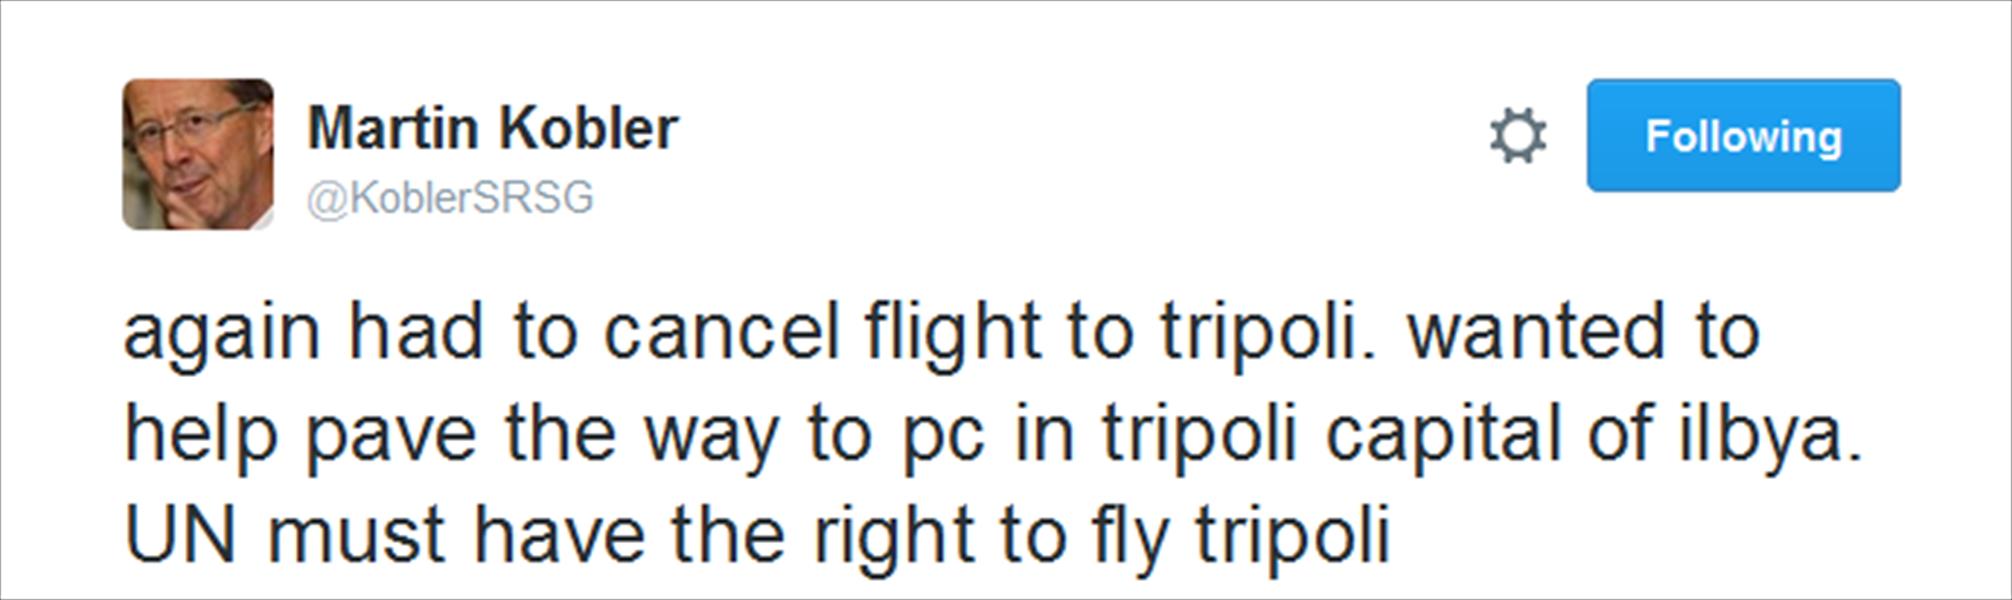 كوبلر يلغي رحلته إلى العاصمة طرابلس